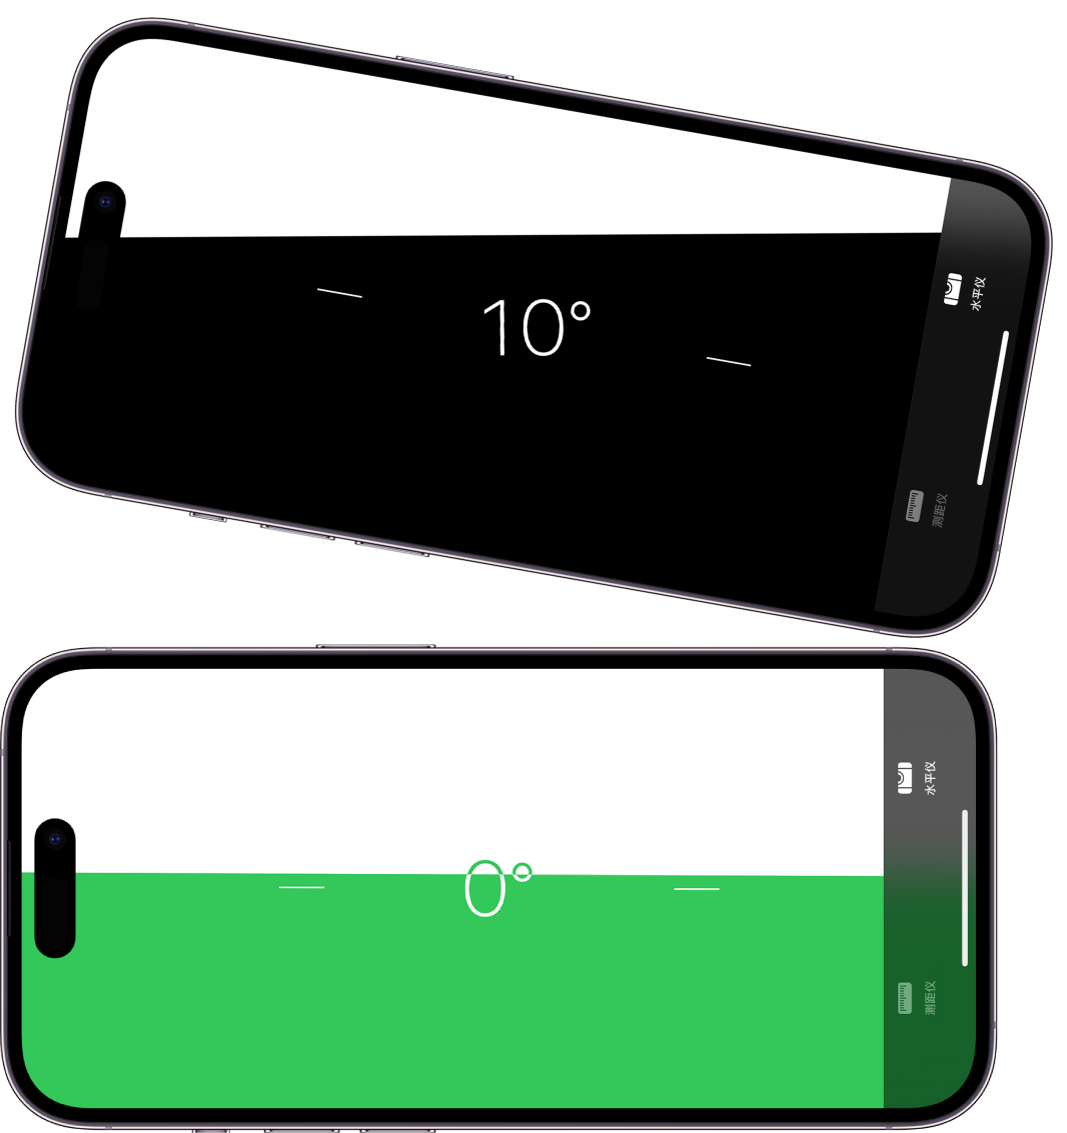 “测距仪” App 中的水平仪屏幕。在顶部，iPhone 倾斜角度为 10 度；在底部，iPhone 位于水平面。